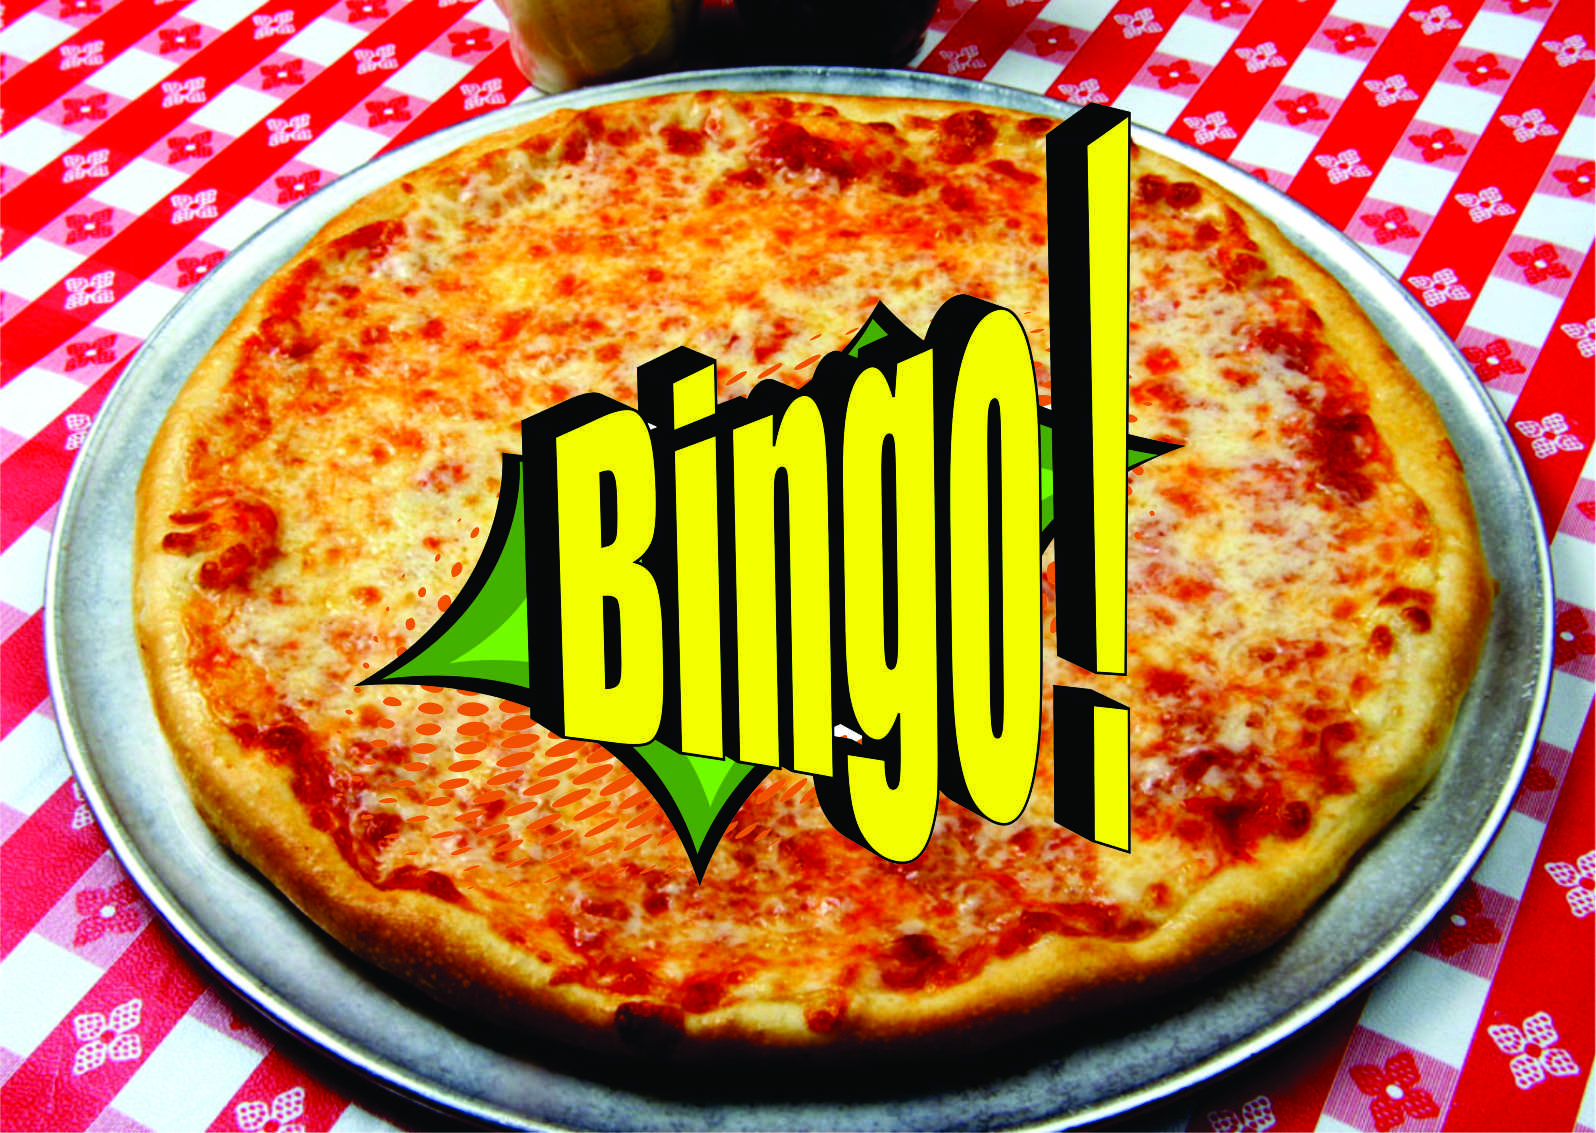 Bingo and pizza